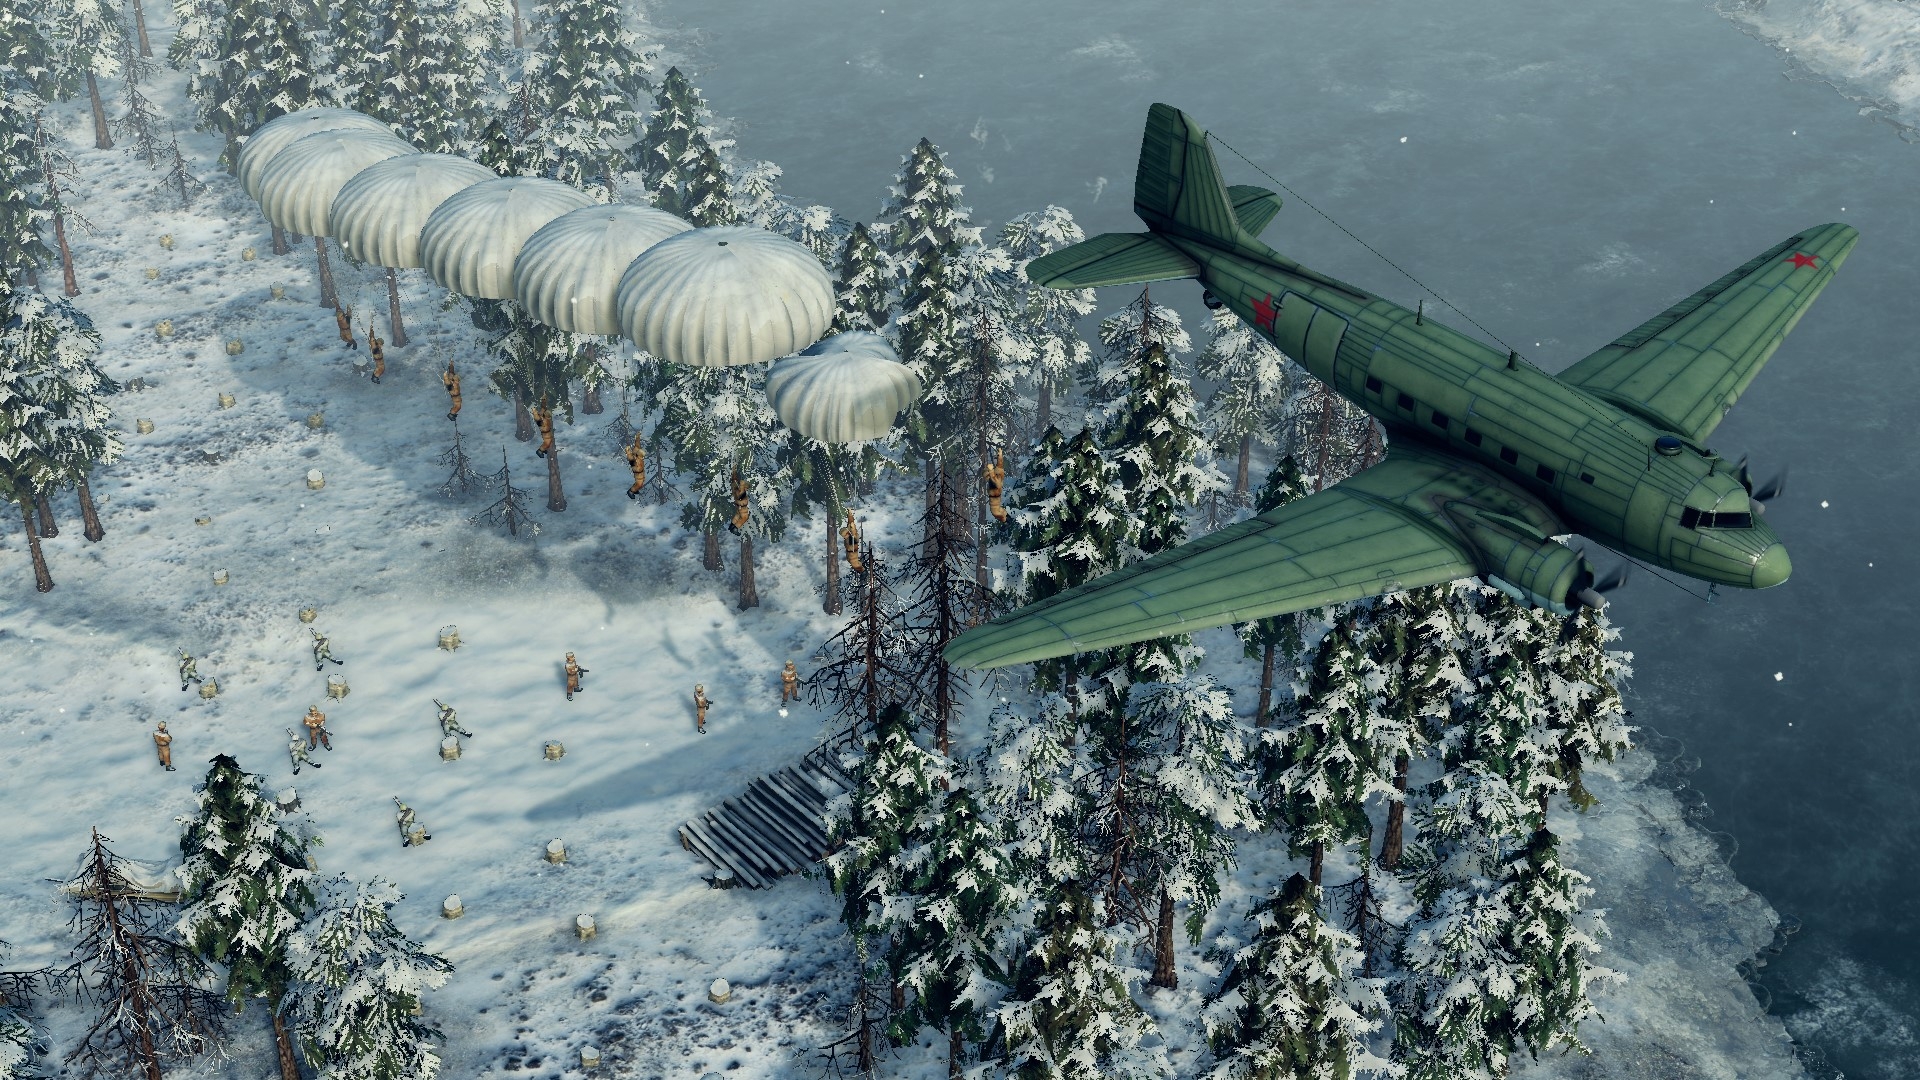 Вышло дополнение к стратегии Sudden Strike 4, предлагающее сразиться с войсками Финляндии